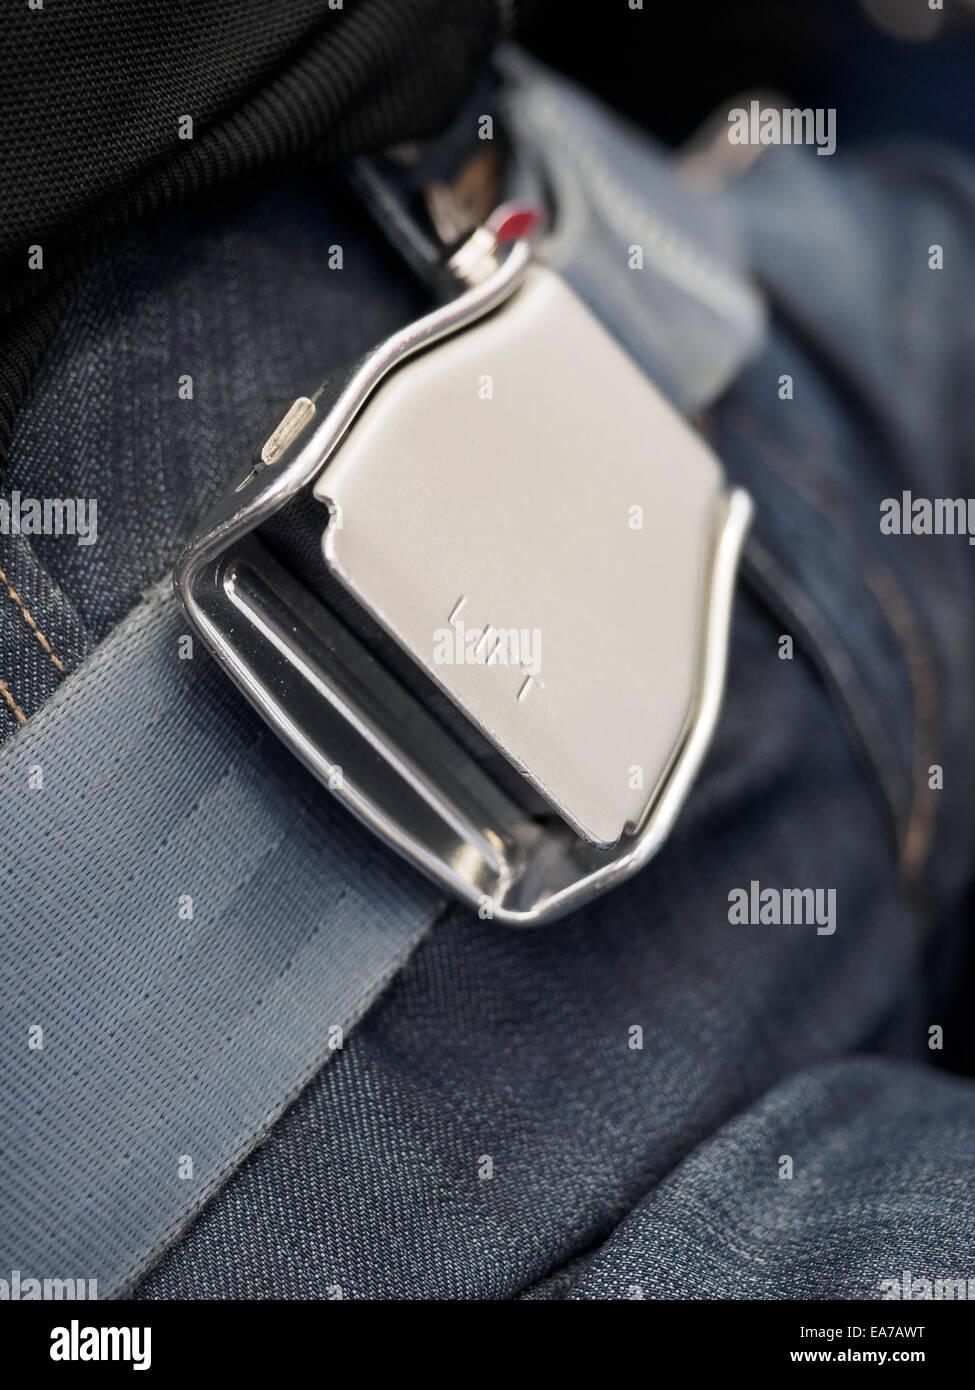 Cinture di sicurezza immagini e fotografie stock ad alta risoluzione - Alamy